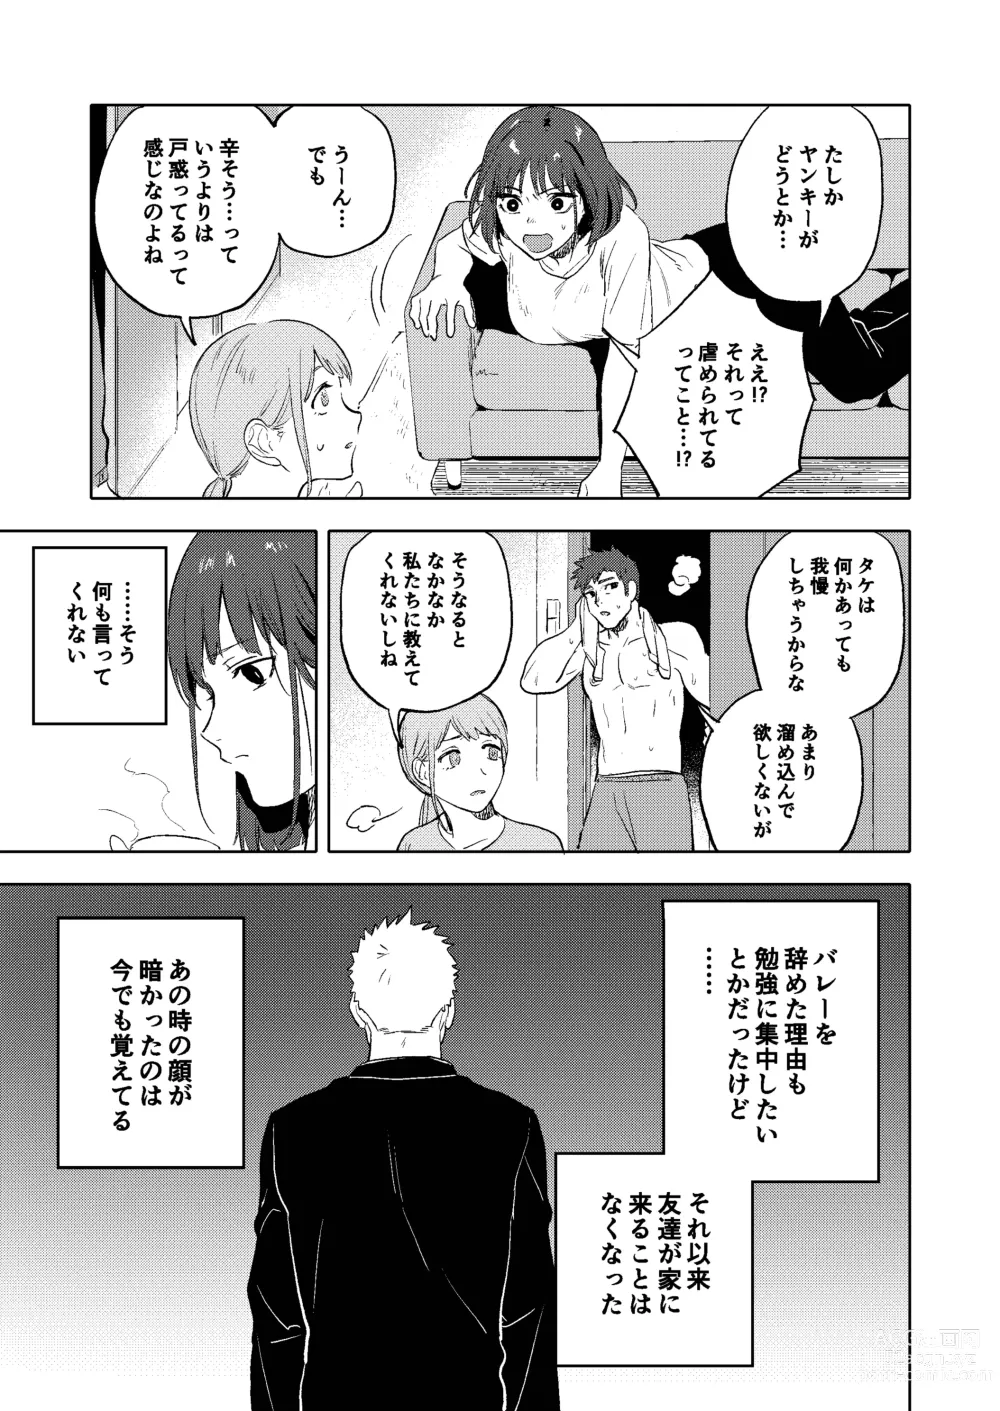 Page 48 of doujinshi Dainarishounari 2